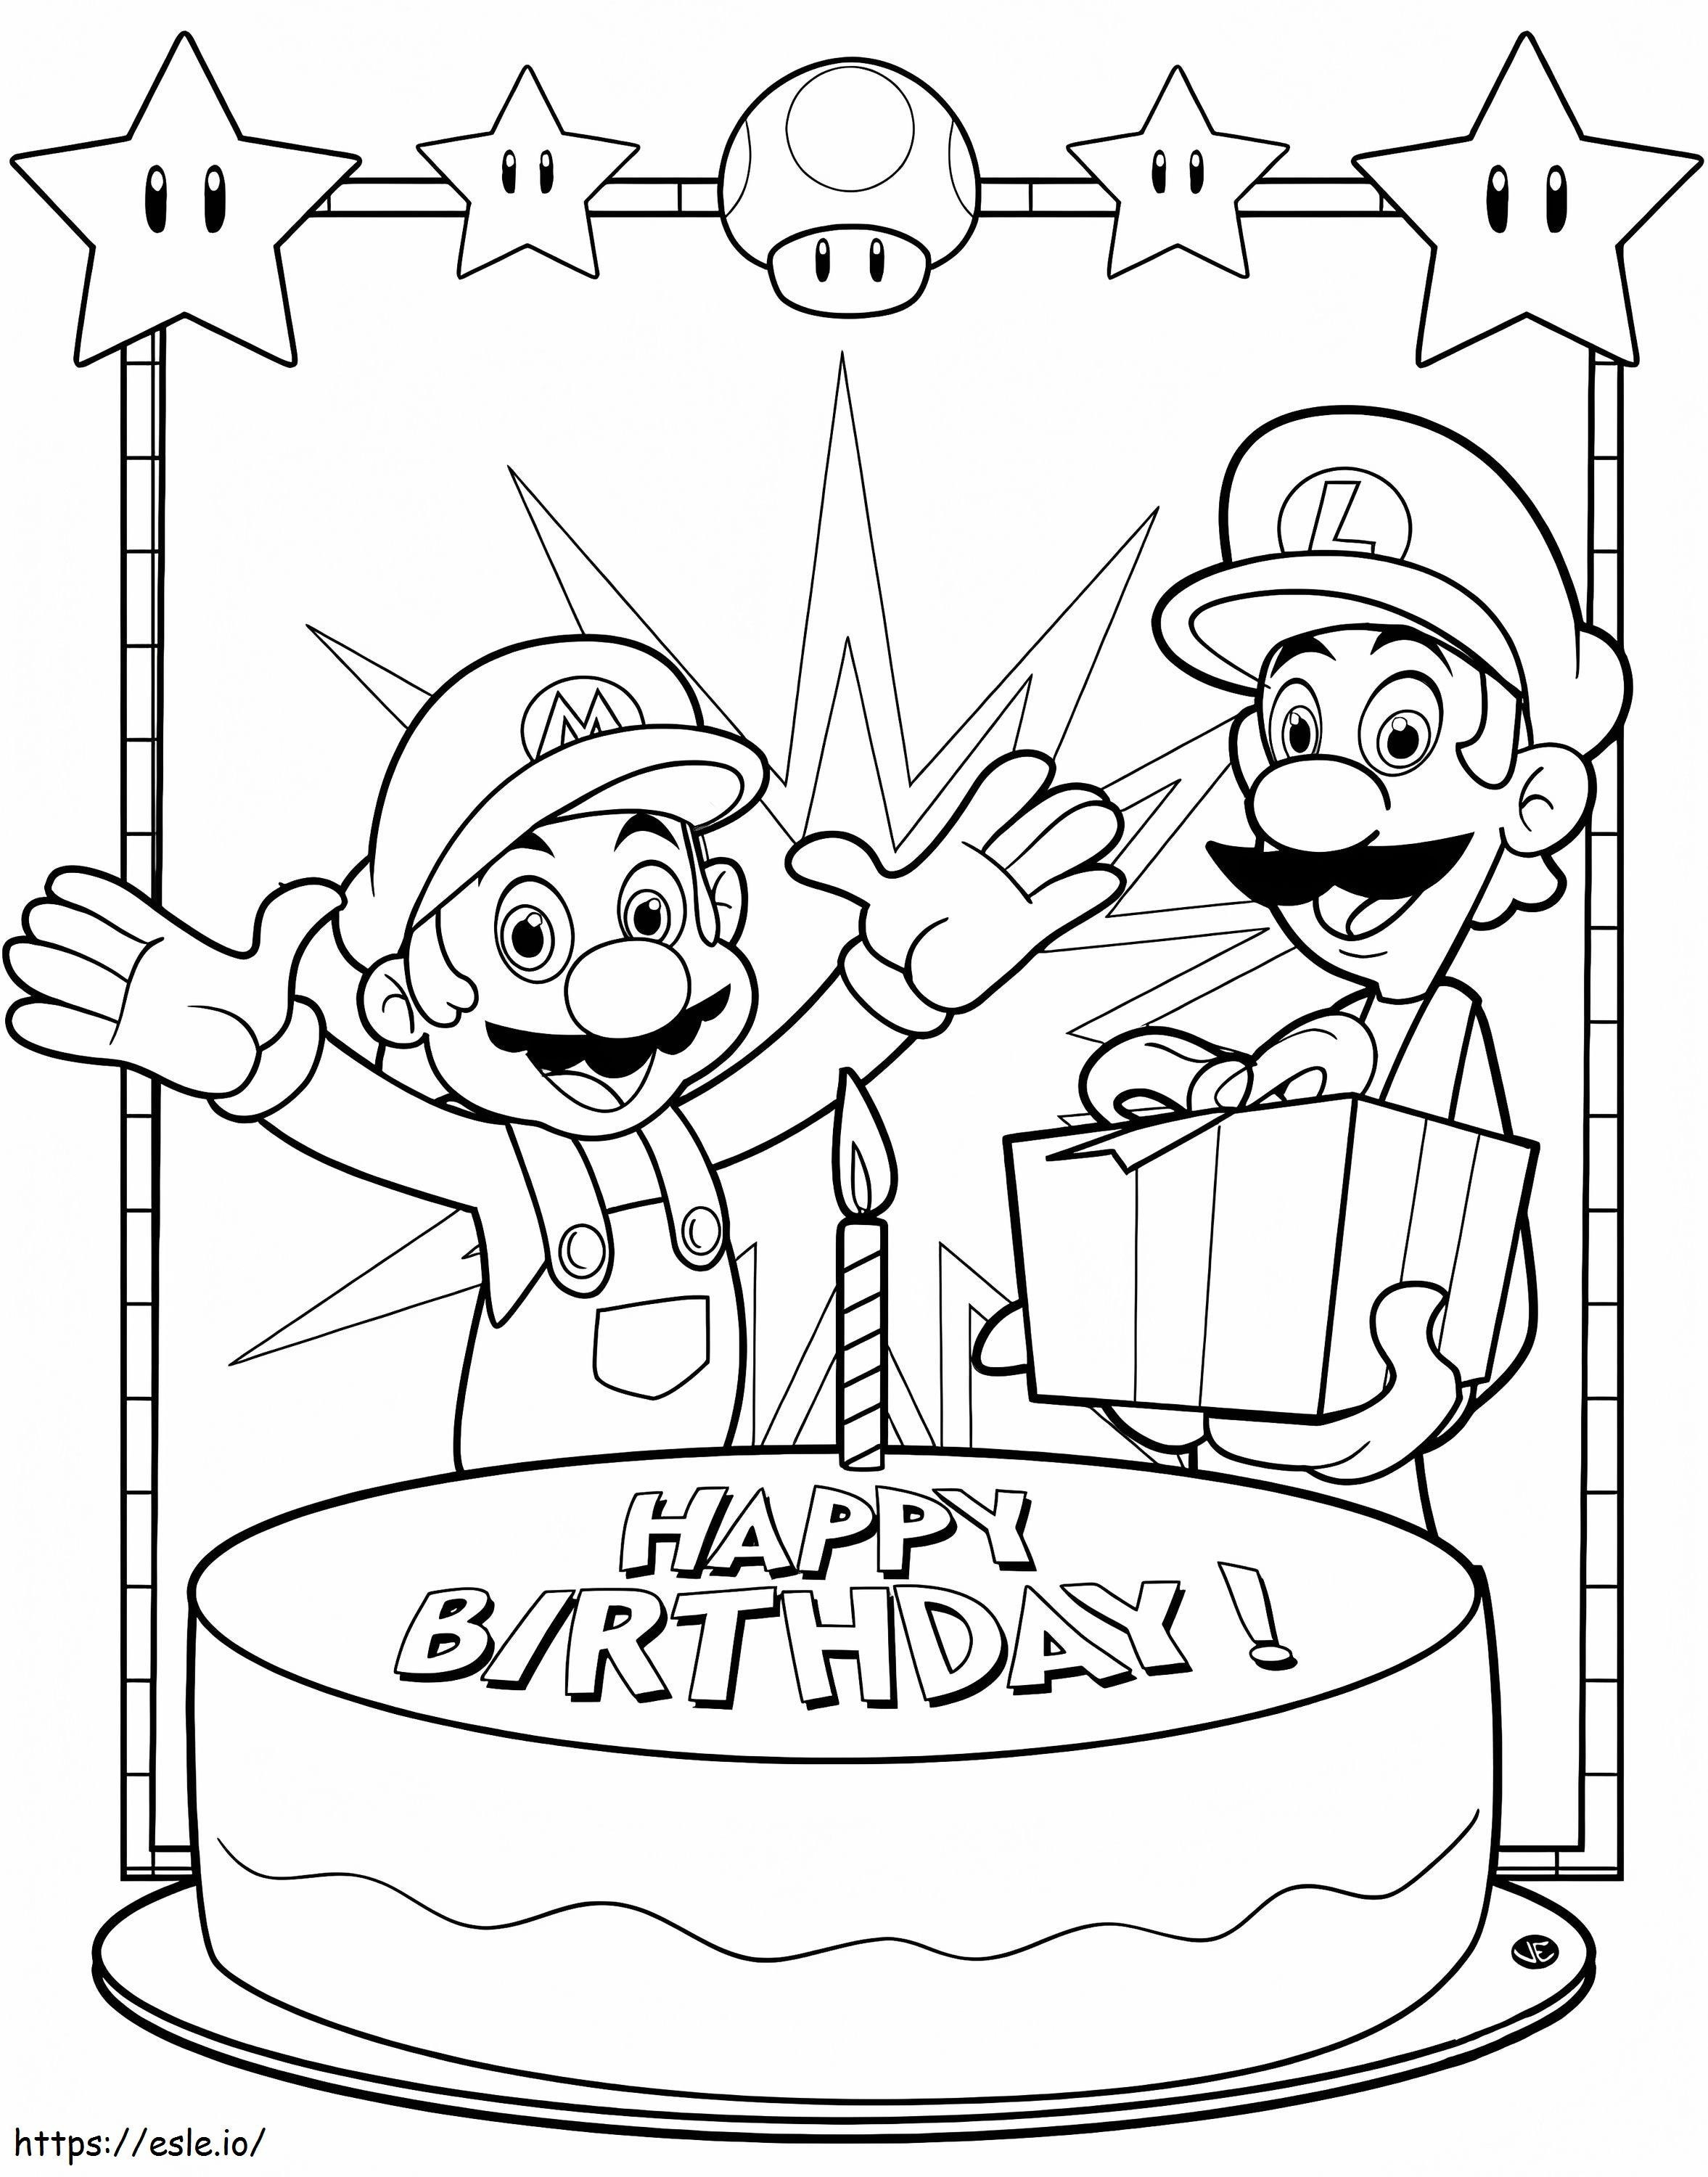 Doğum günün kutlu olsun Mario boyama